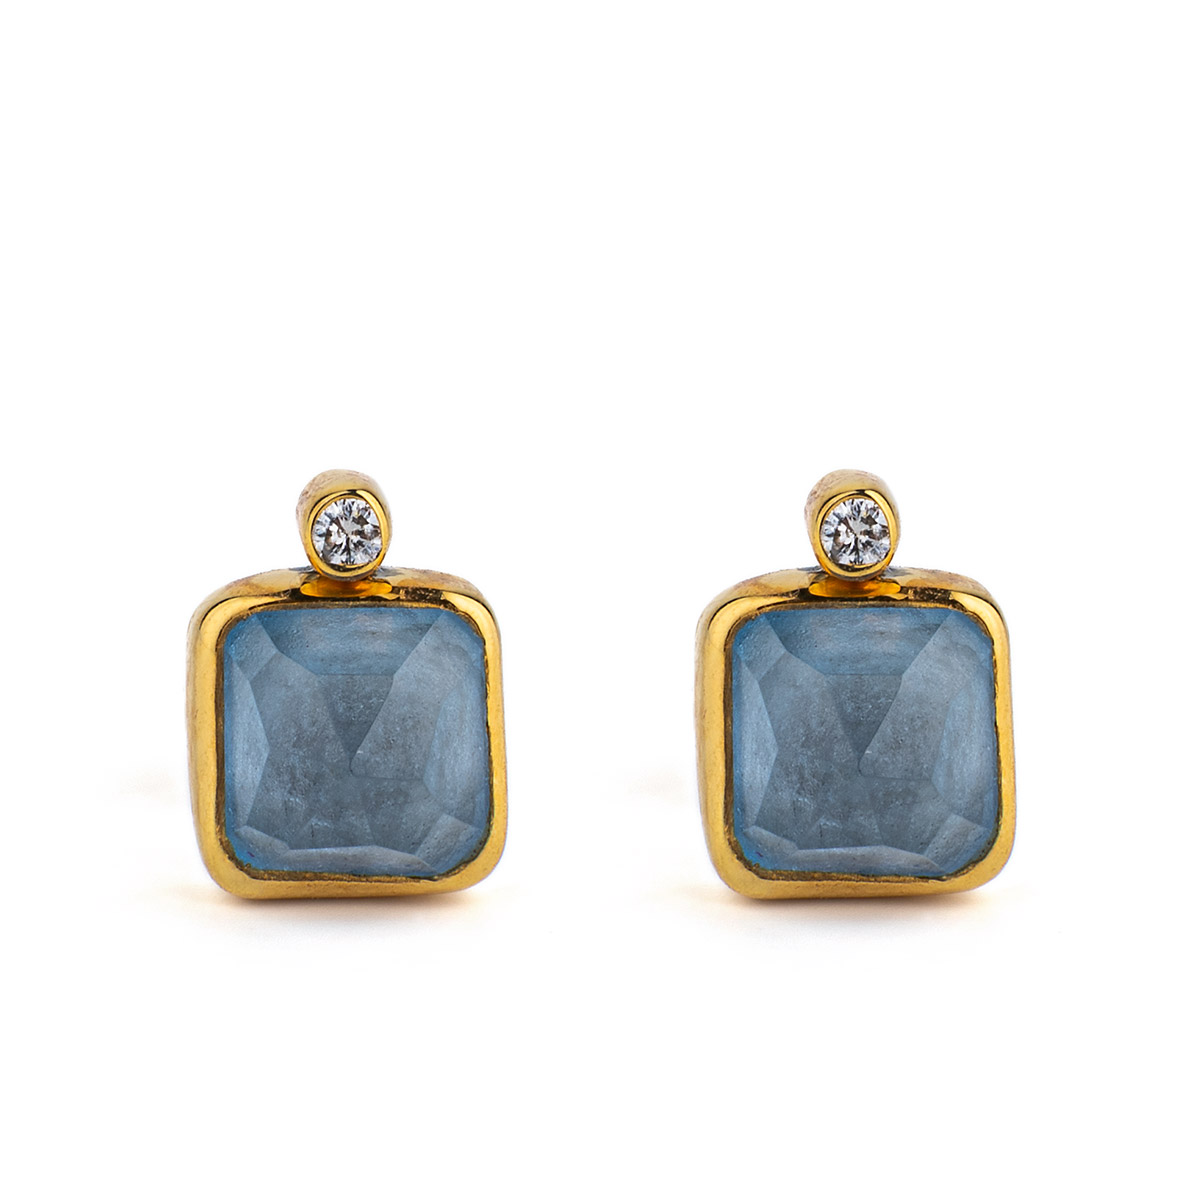 Σκουλαρίκια Μπλε Τοπάζι - 18Κ Χρυσό και Ασήμι 925 - GREEK ROOTS